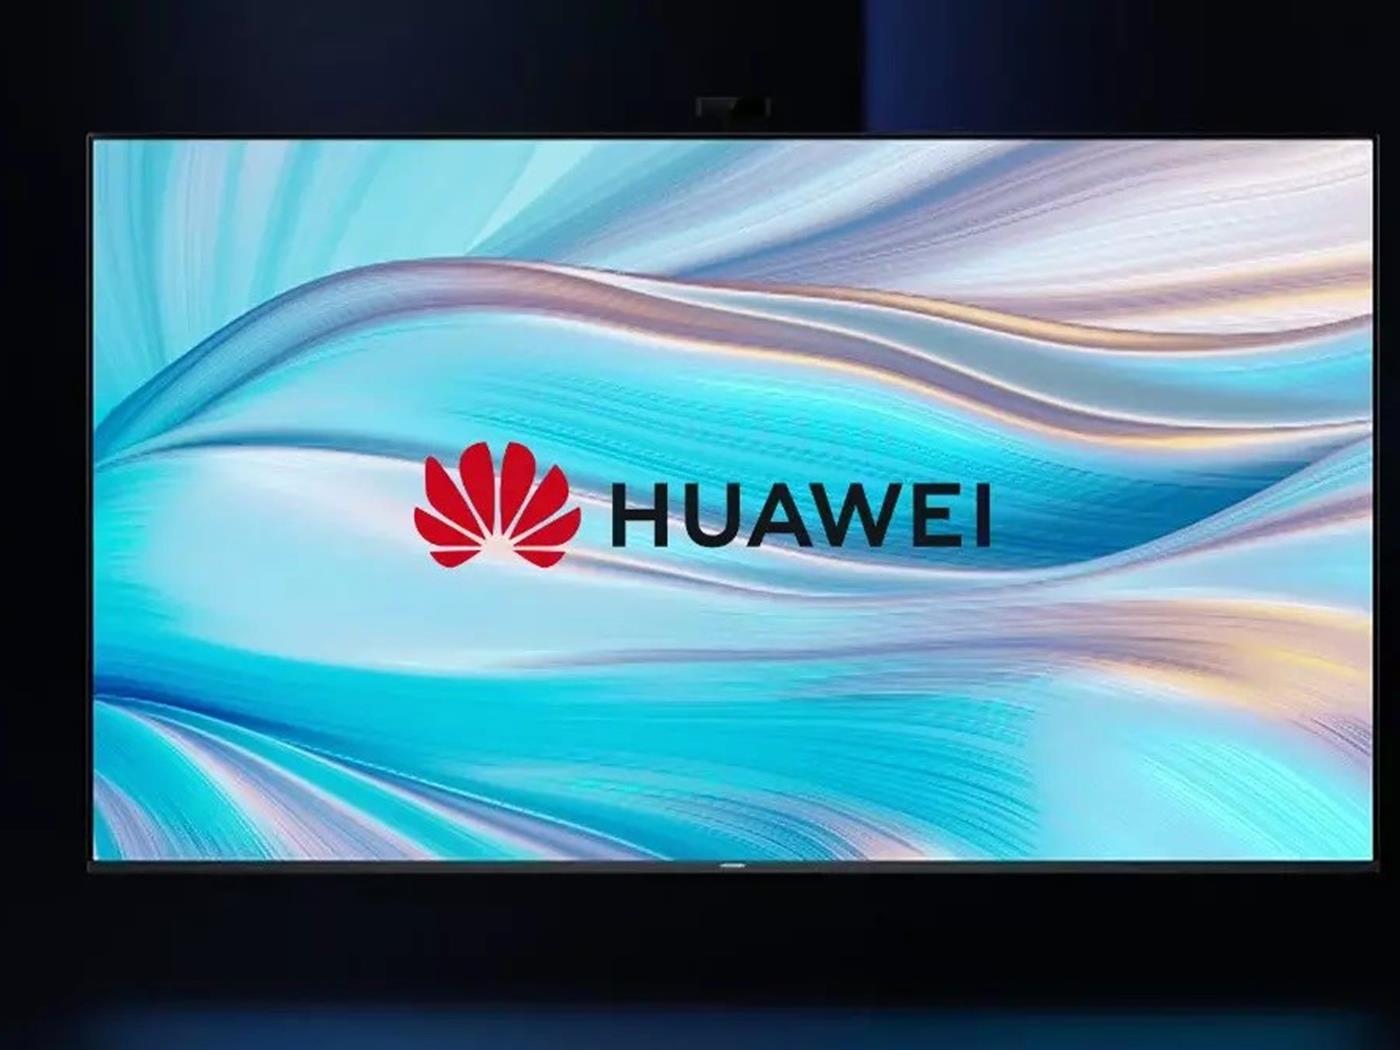 Huawei vision купить. Телевизор 55" телевизор Huawei Vision Smart. 55" Huawei Vision s (hd55kan9a). Huawei Vision s Smart TV x65.